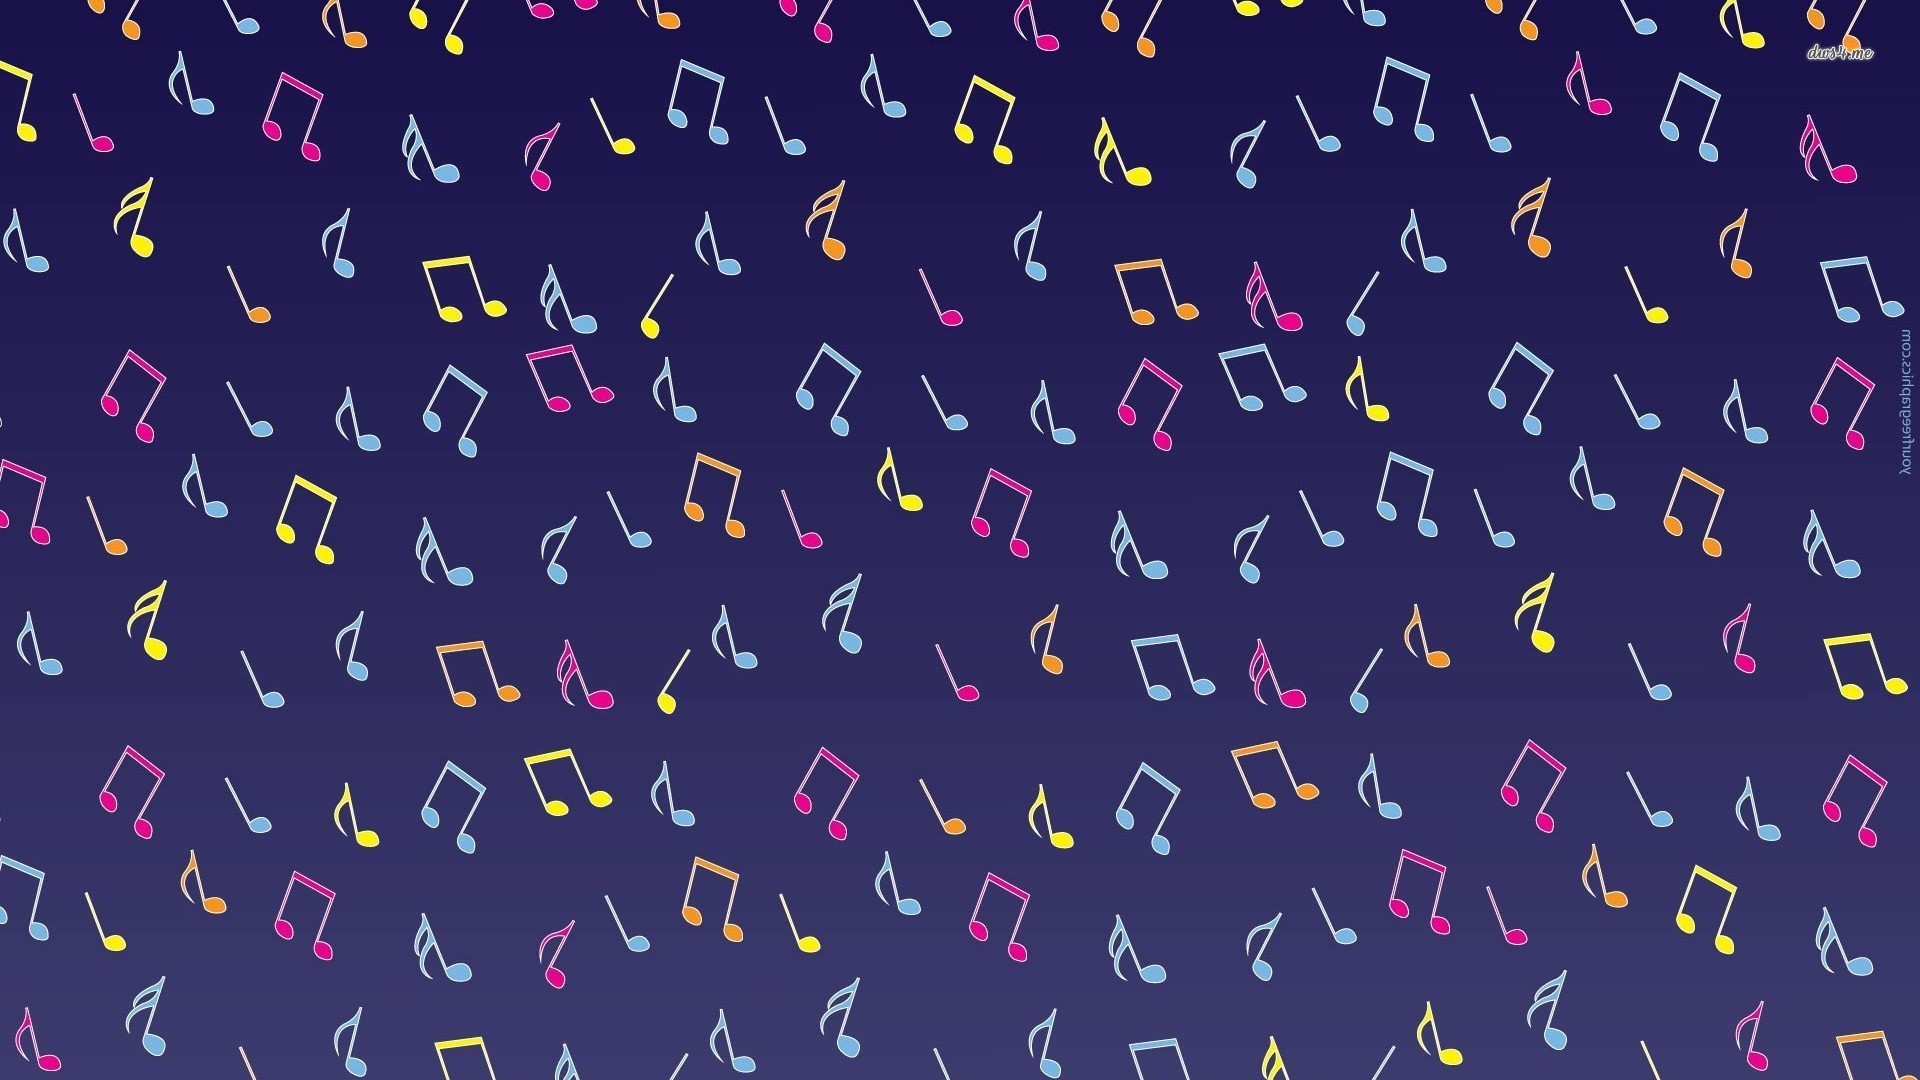 1920x1080 Musical notes wallpaper Singing Wallpaper (38409245) Fanpop